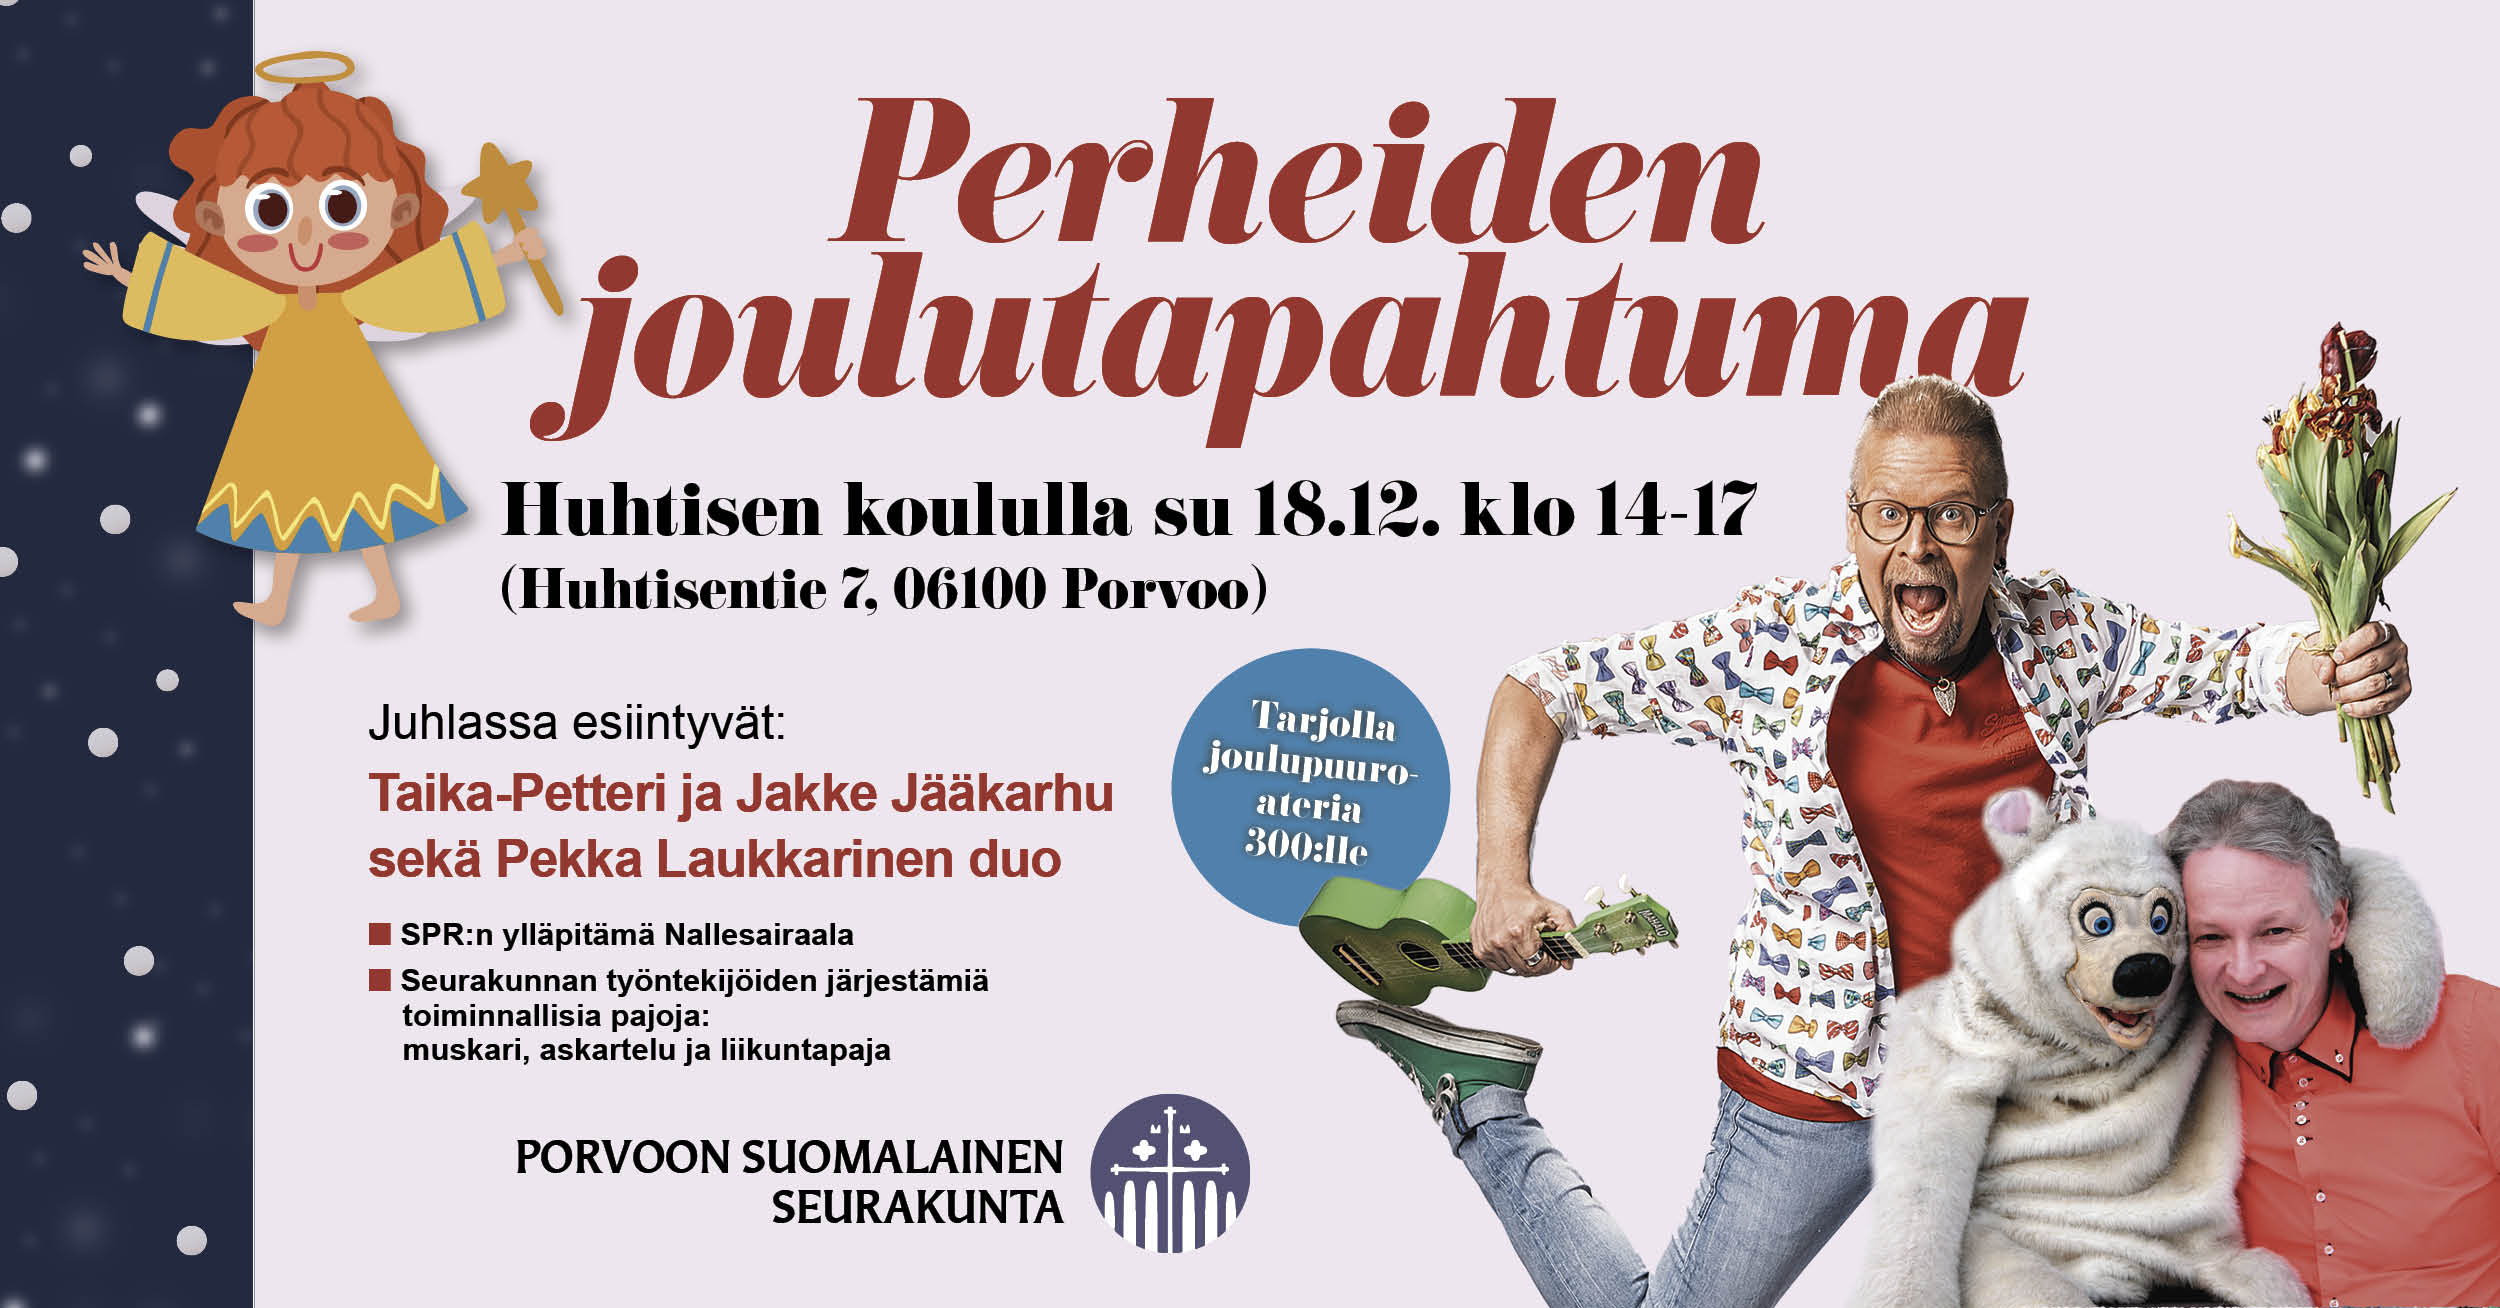 Perheiden joulutapahtuma , kuva Pekka Laukkarinen ja Taika-Petteri ja Jakke Jääkarhu